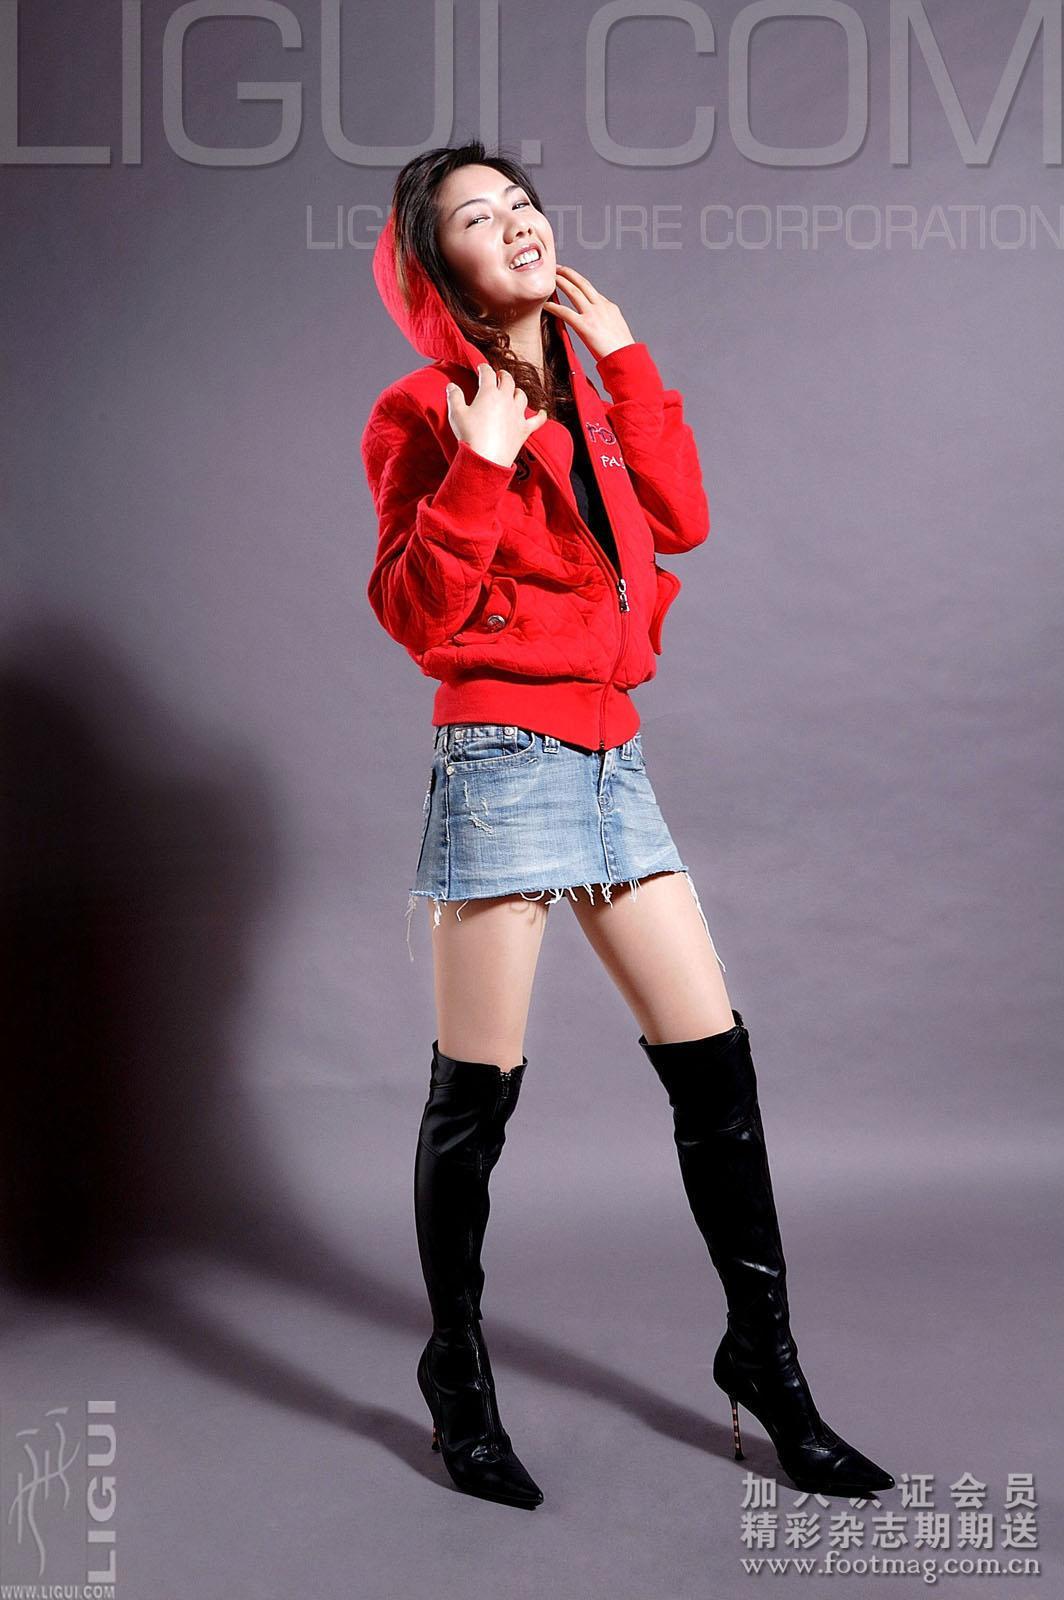 [Ligui丽柜会所]2007-04-02 丝丝 红色外套与牛仔短裙加黑色皮靴性感私房写真集,